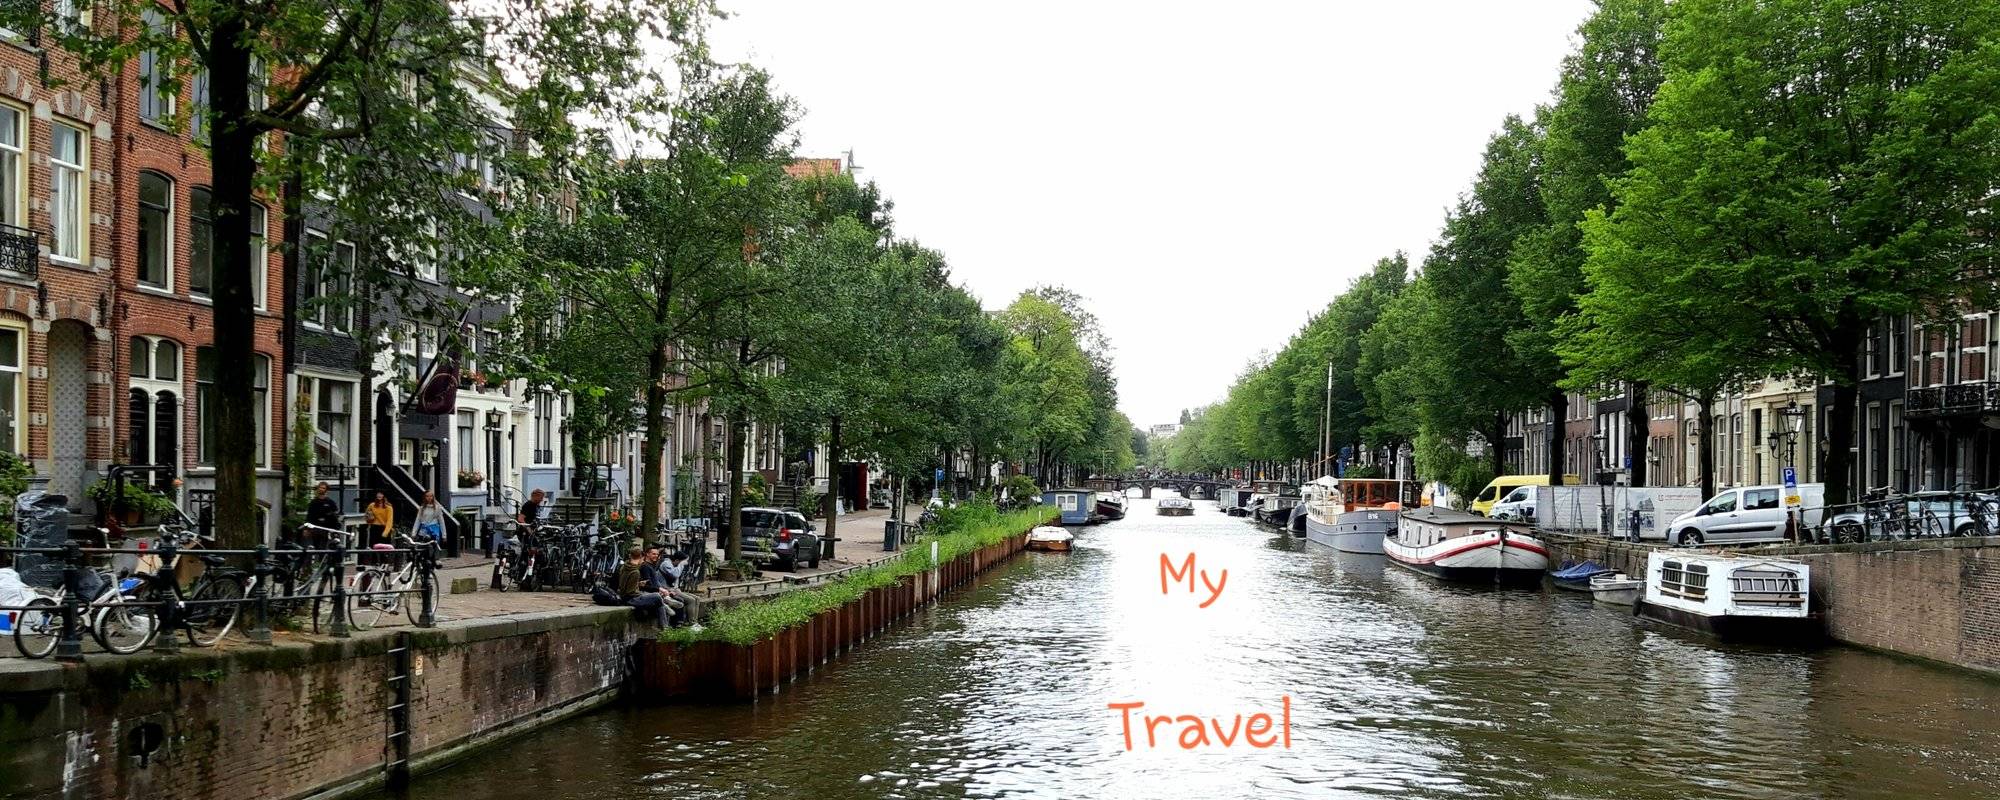 Amsterdam : Capital of the Netherlands / Hauptstadt der Niederlande